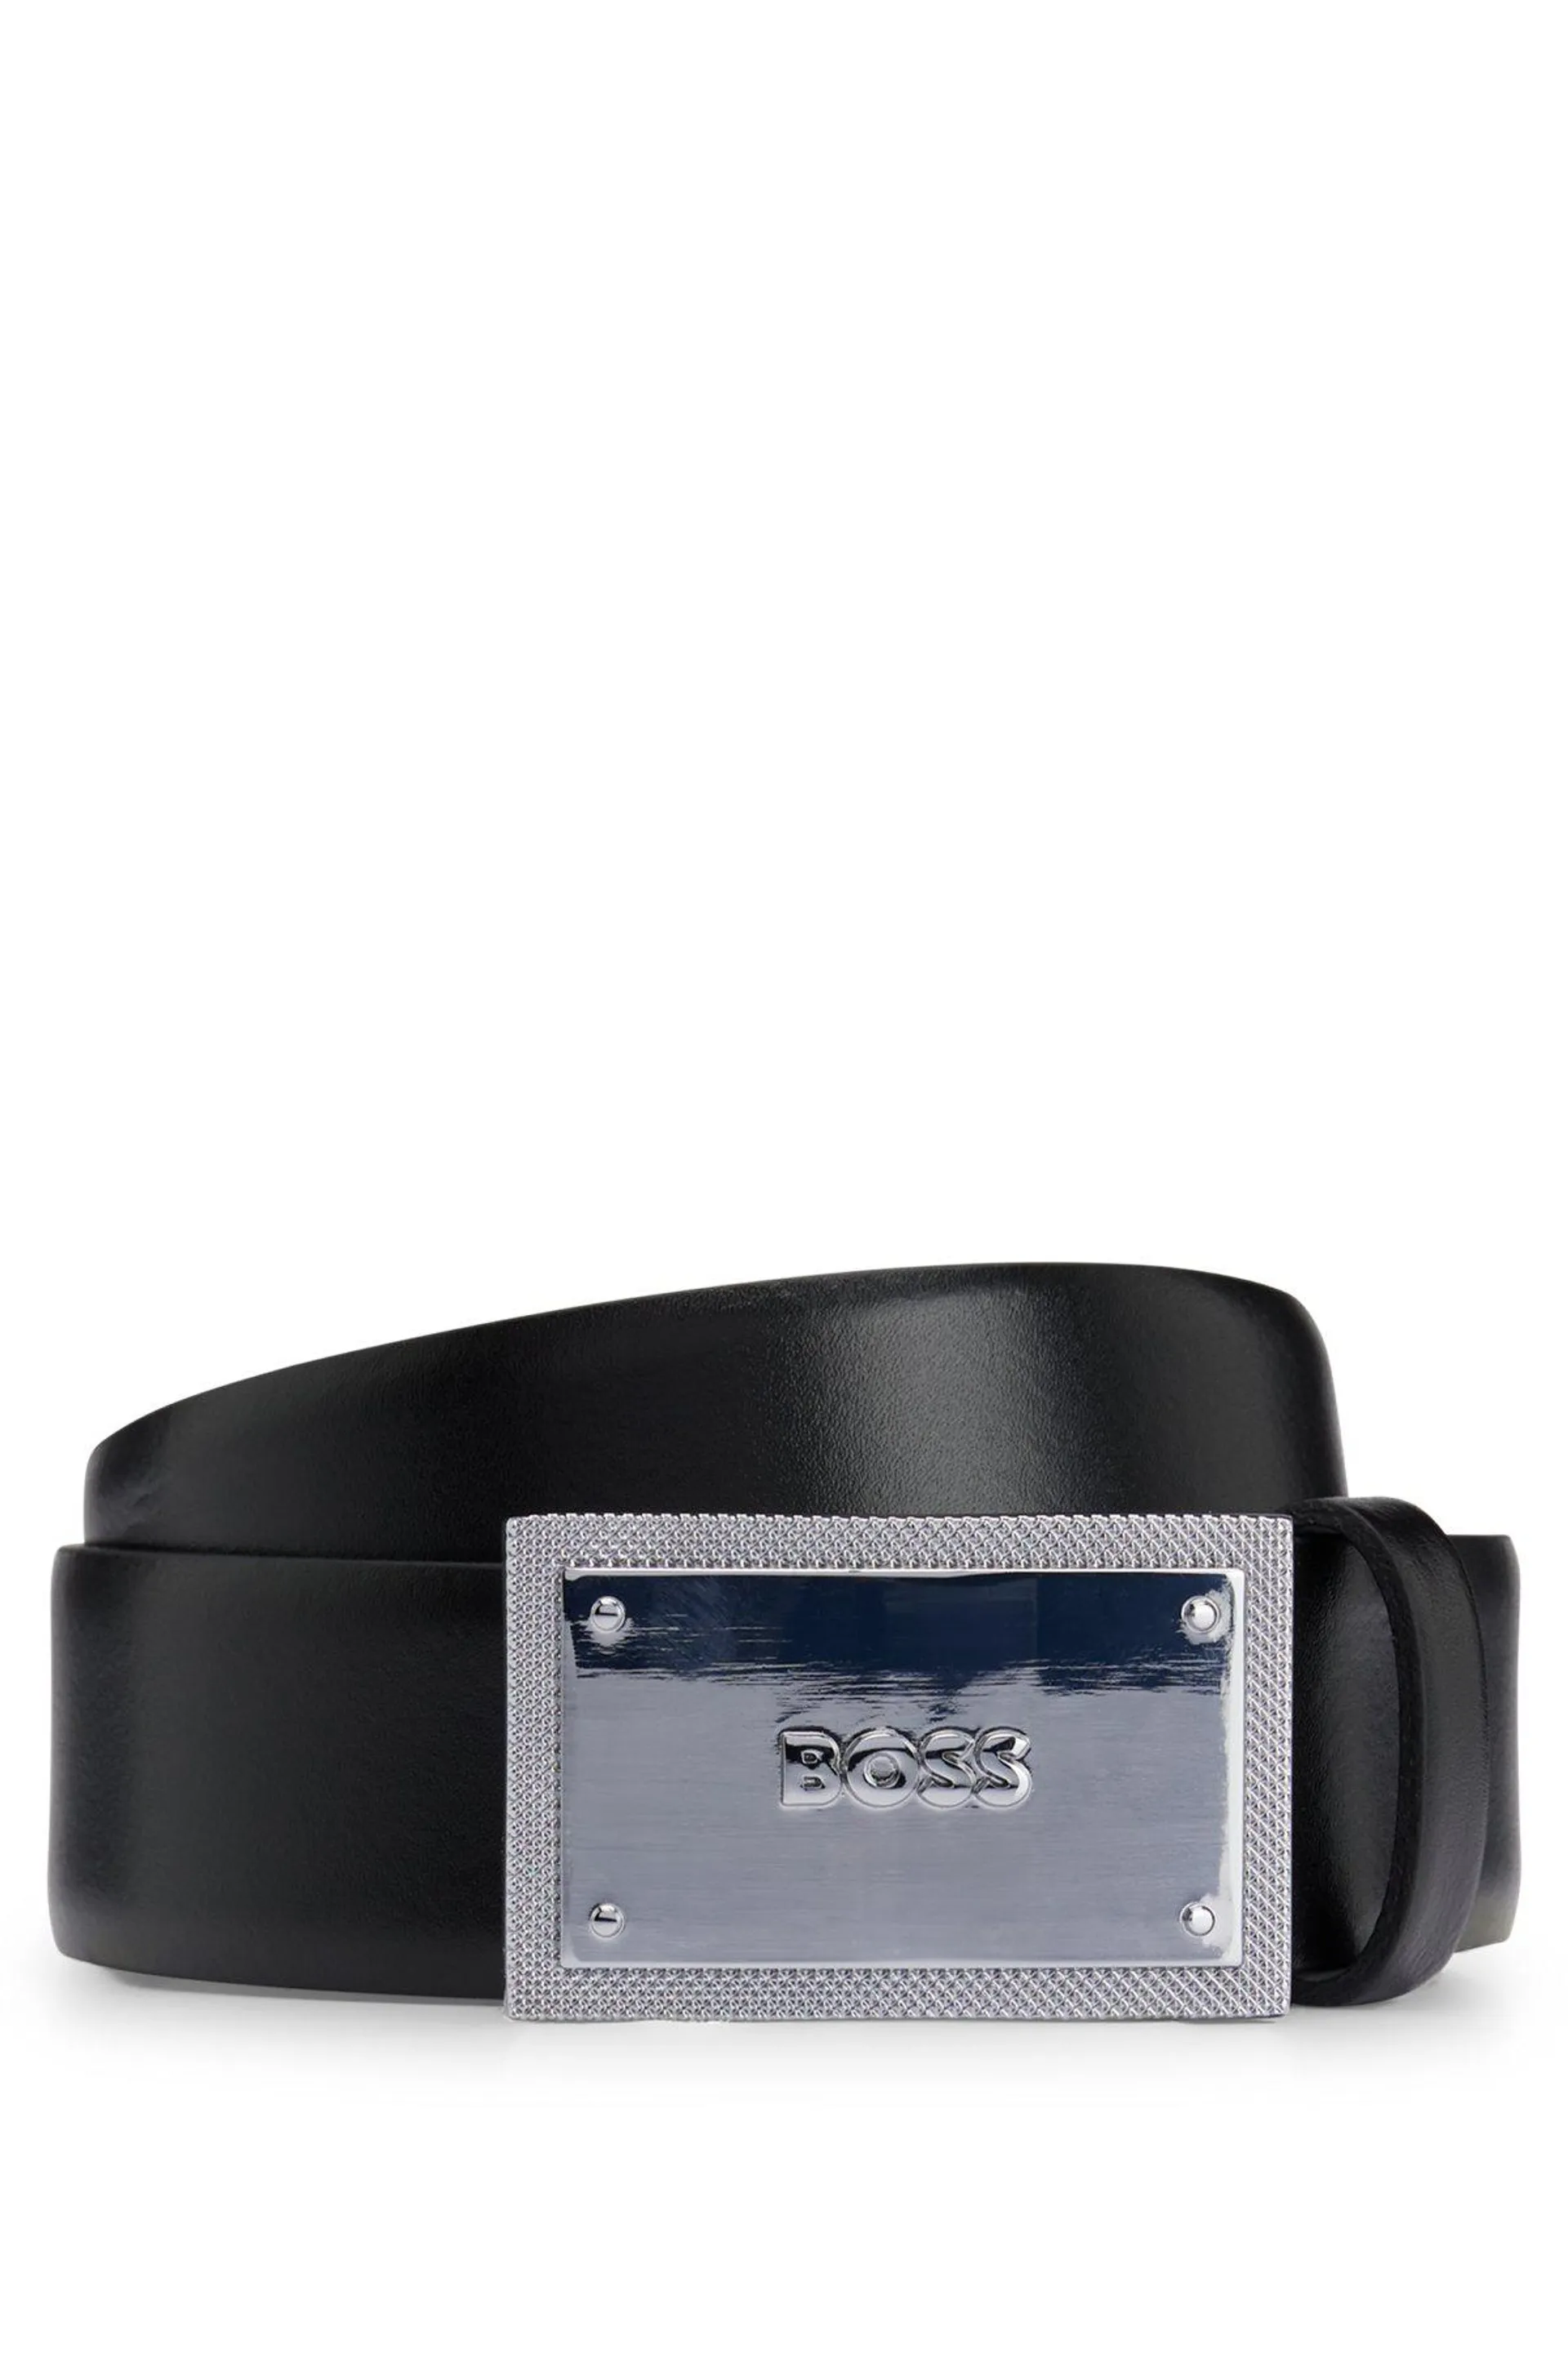 Cinturón de piel italiana con hebilla con placa de la marca